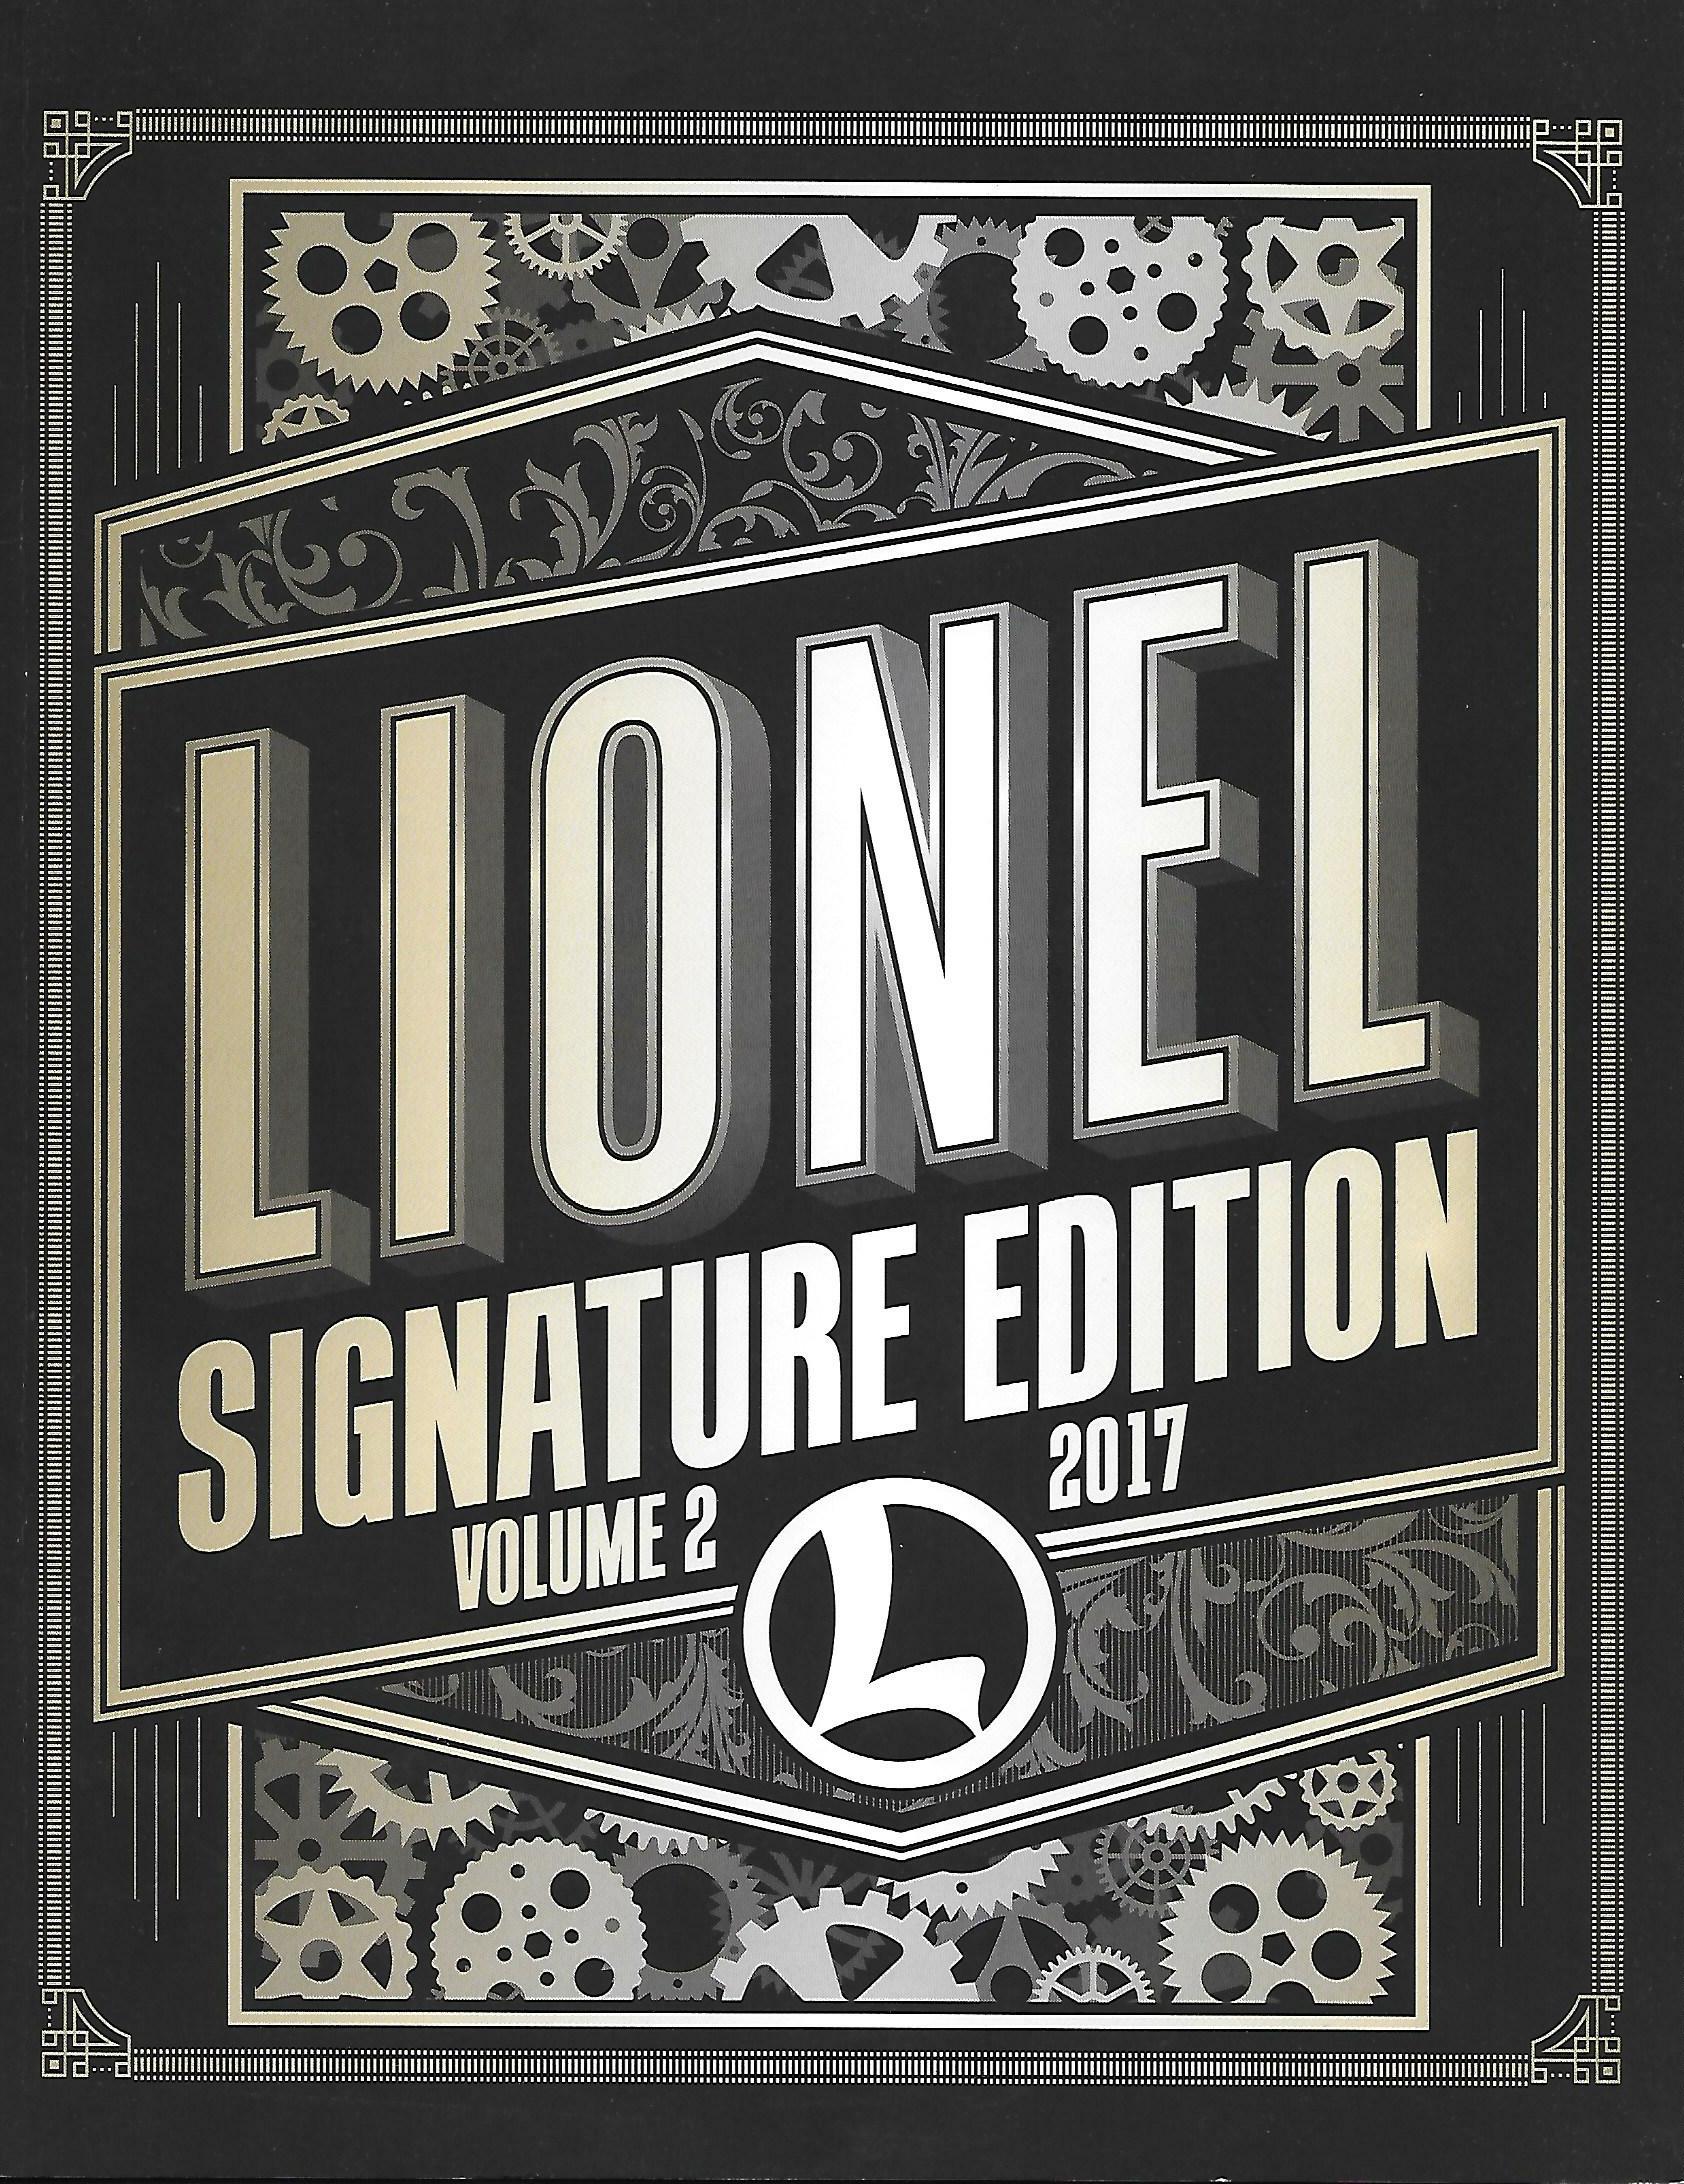 Lionel 2017 Signature Edition Volume 2 Catalog image